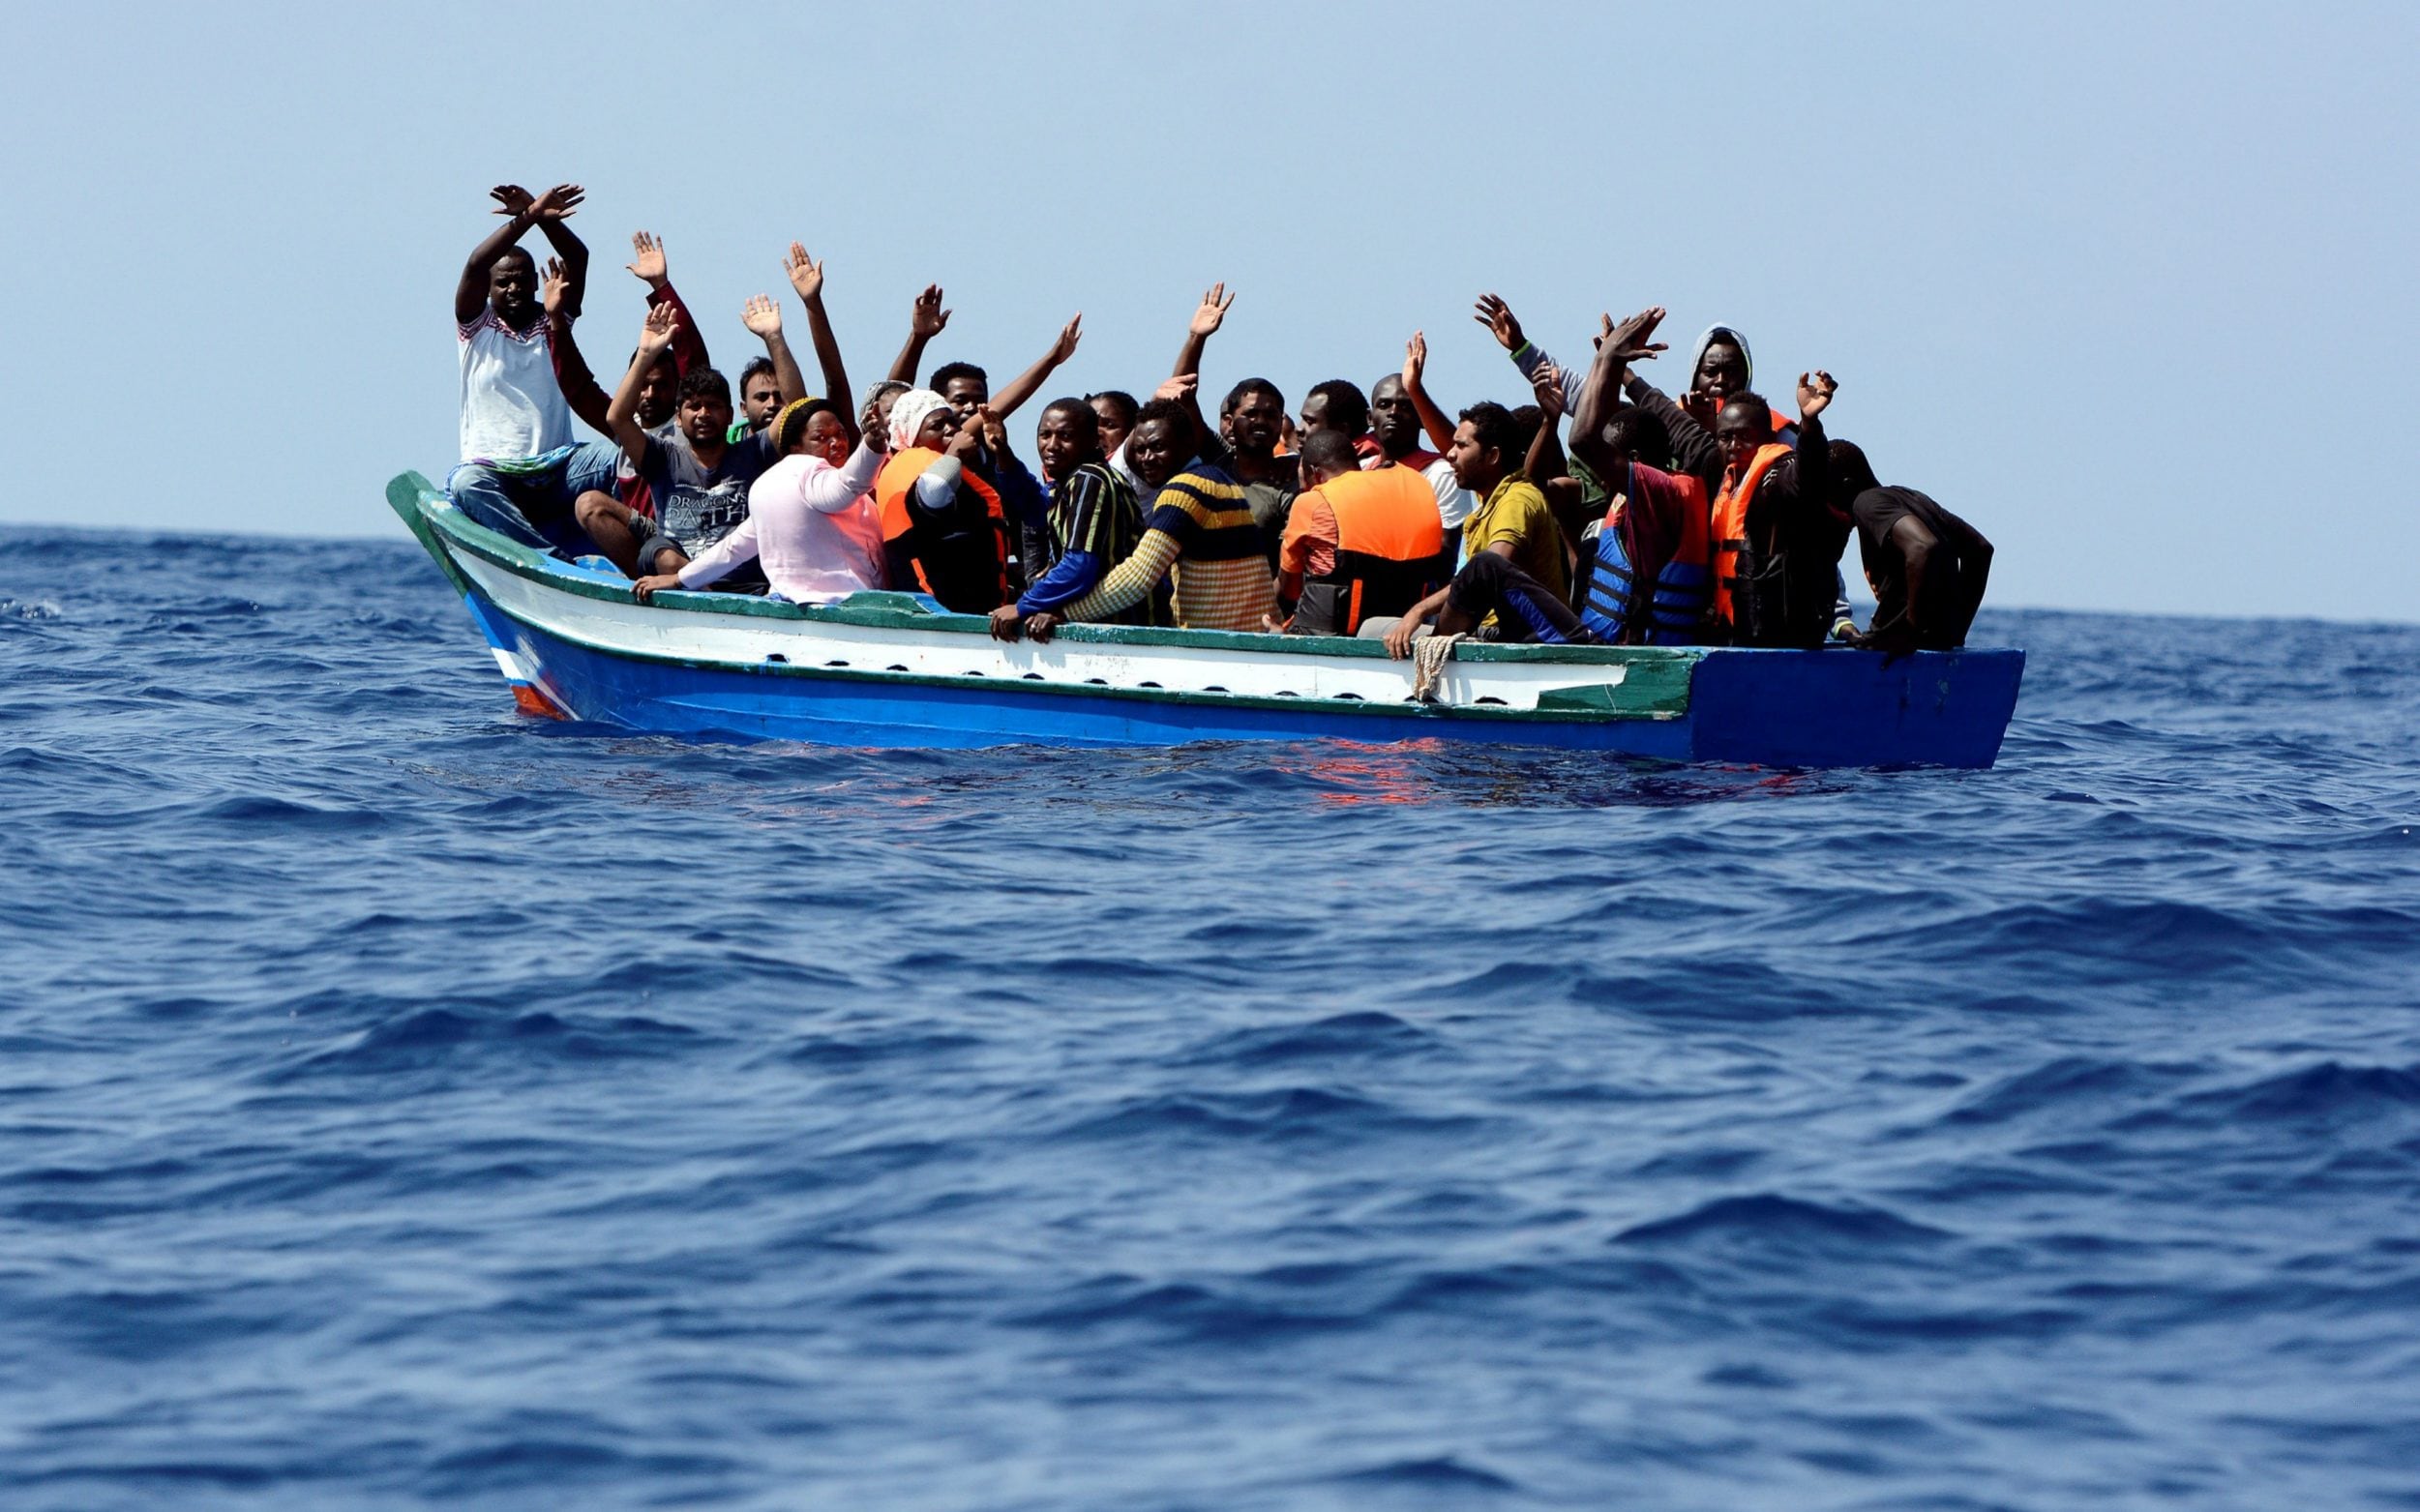 Συμφωνία-σοκ: Η Ελλάδα συμφώνησε να γίνει λιμάνι άφιξης παράνομων μεταναστών από τη Λιβύη!